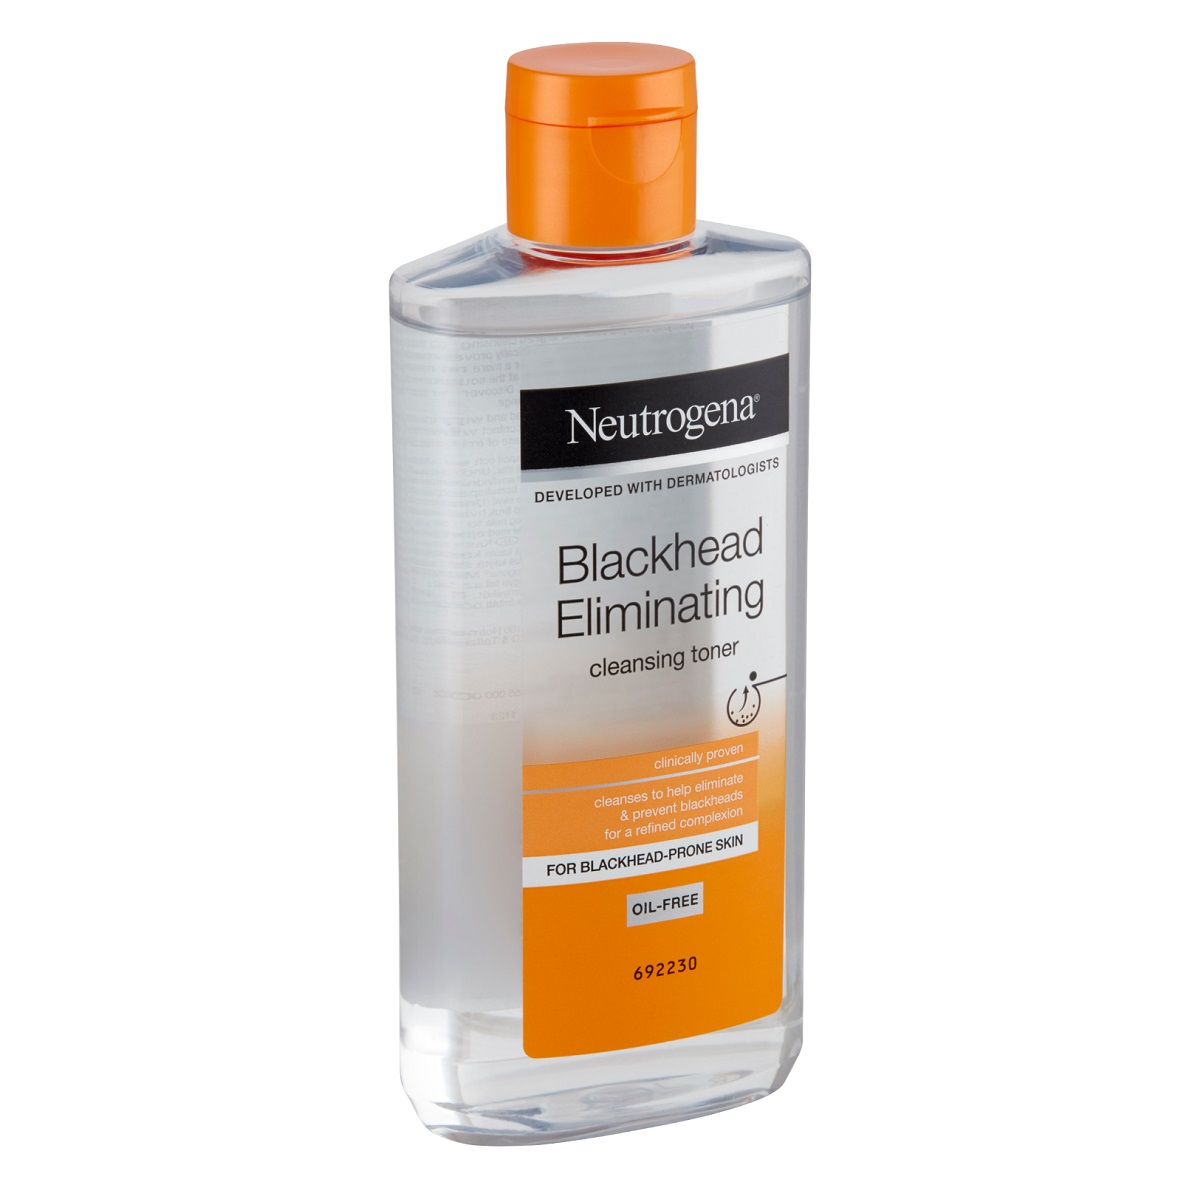 تونر ضد جوش سرسیاه نیتروژنا (پاکسازی و از بین برنده جوش سرسیاه در پوست چرب) - Neutrogena Blackhead Eliminating Cleansing Toner